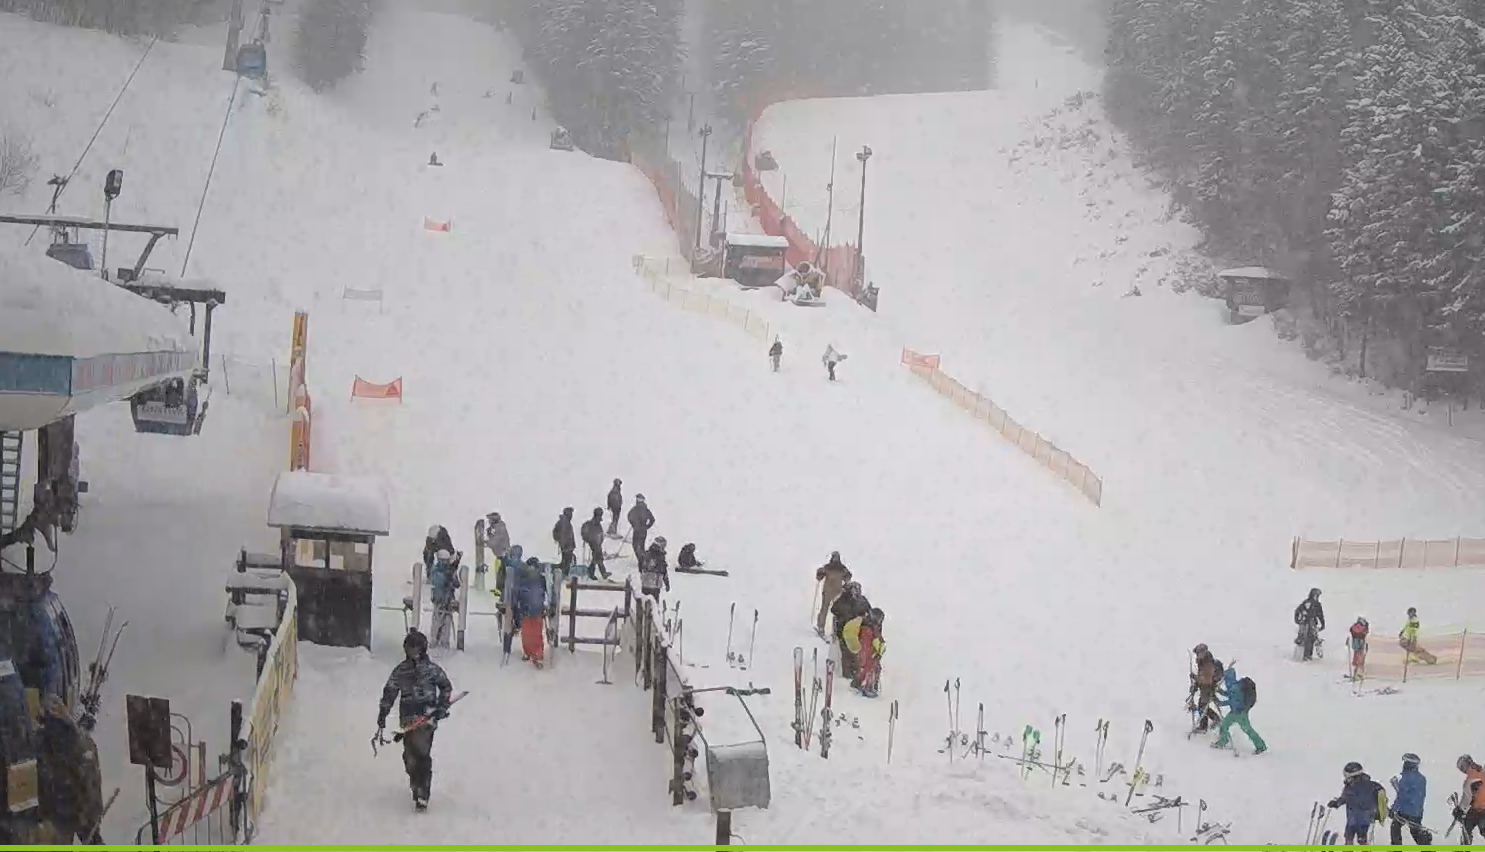 Live Streaming Ski Resort Webcams in Europe